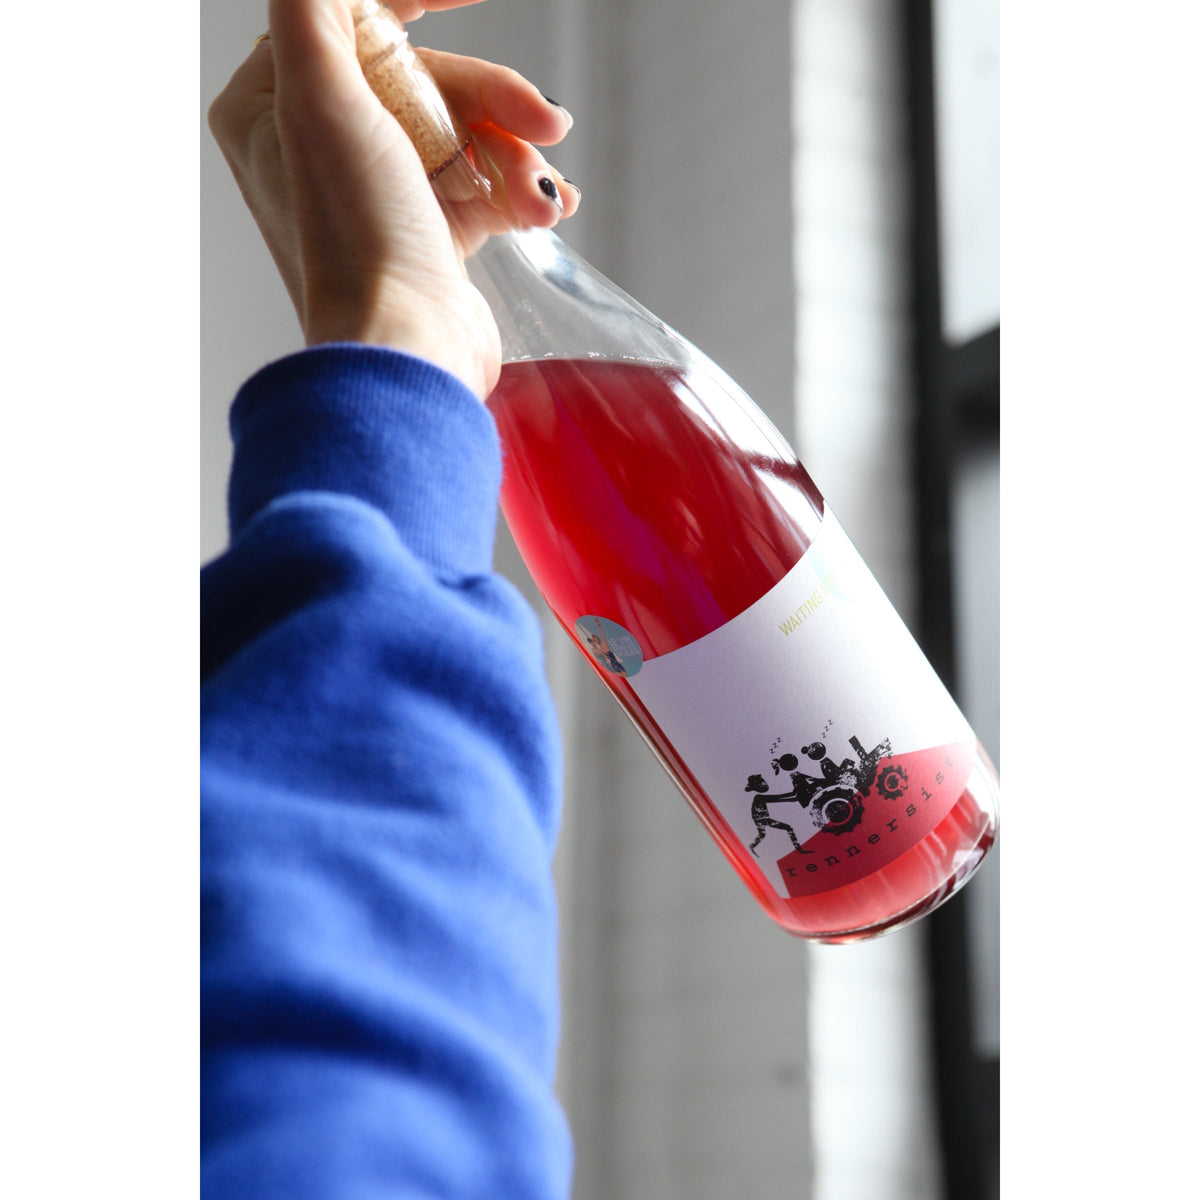 Waiting For Tom rosé 2021 - Rosé - Rennersistas - Le vin dans les voiles